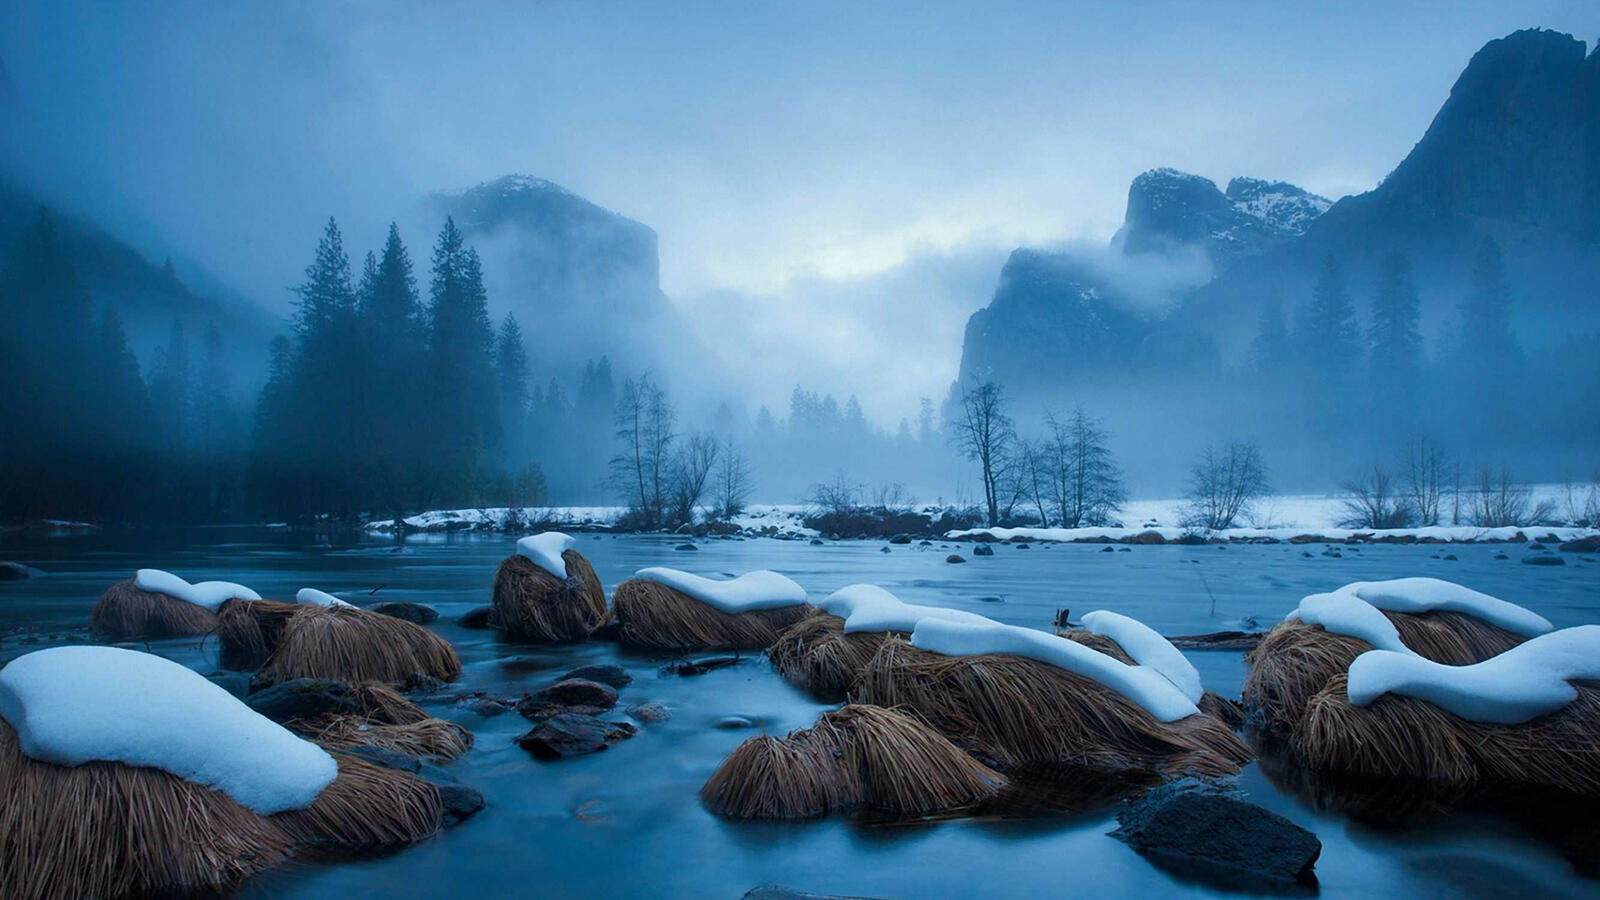 Бесплатное фото Река со снежными берегами в тумане